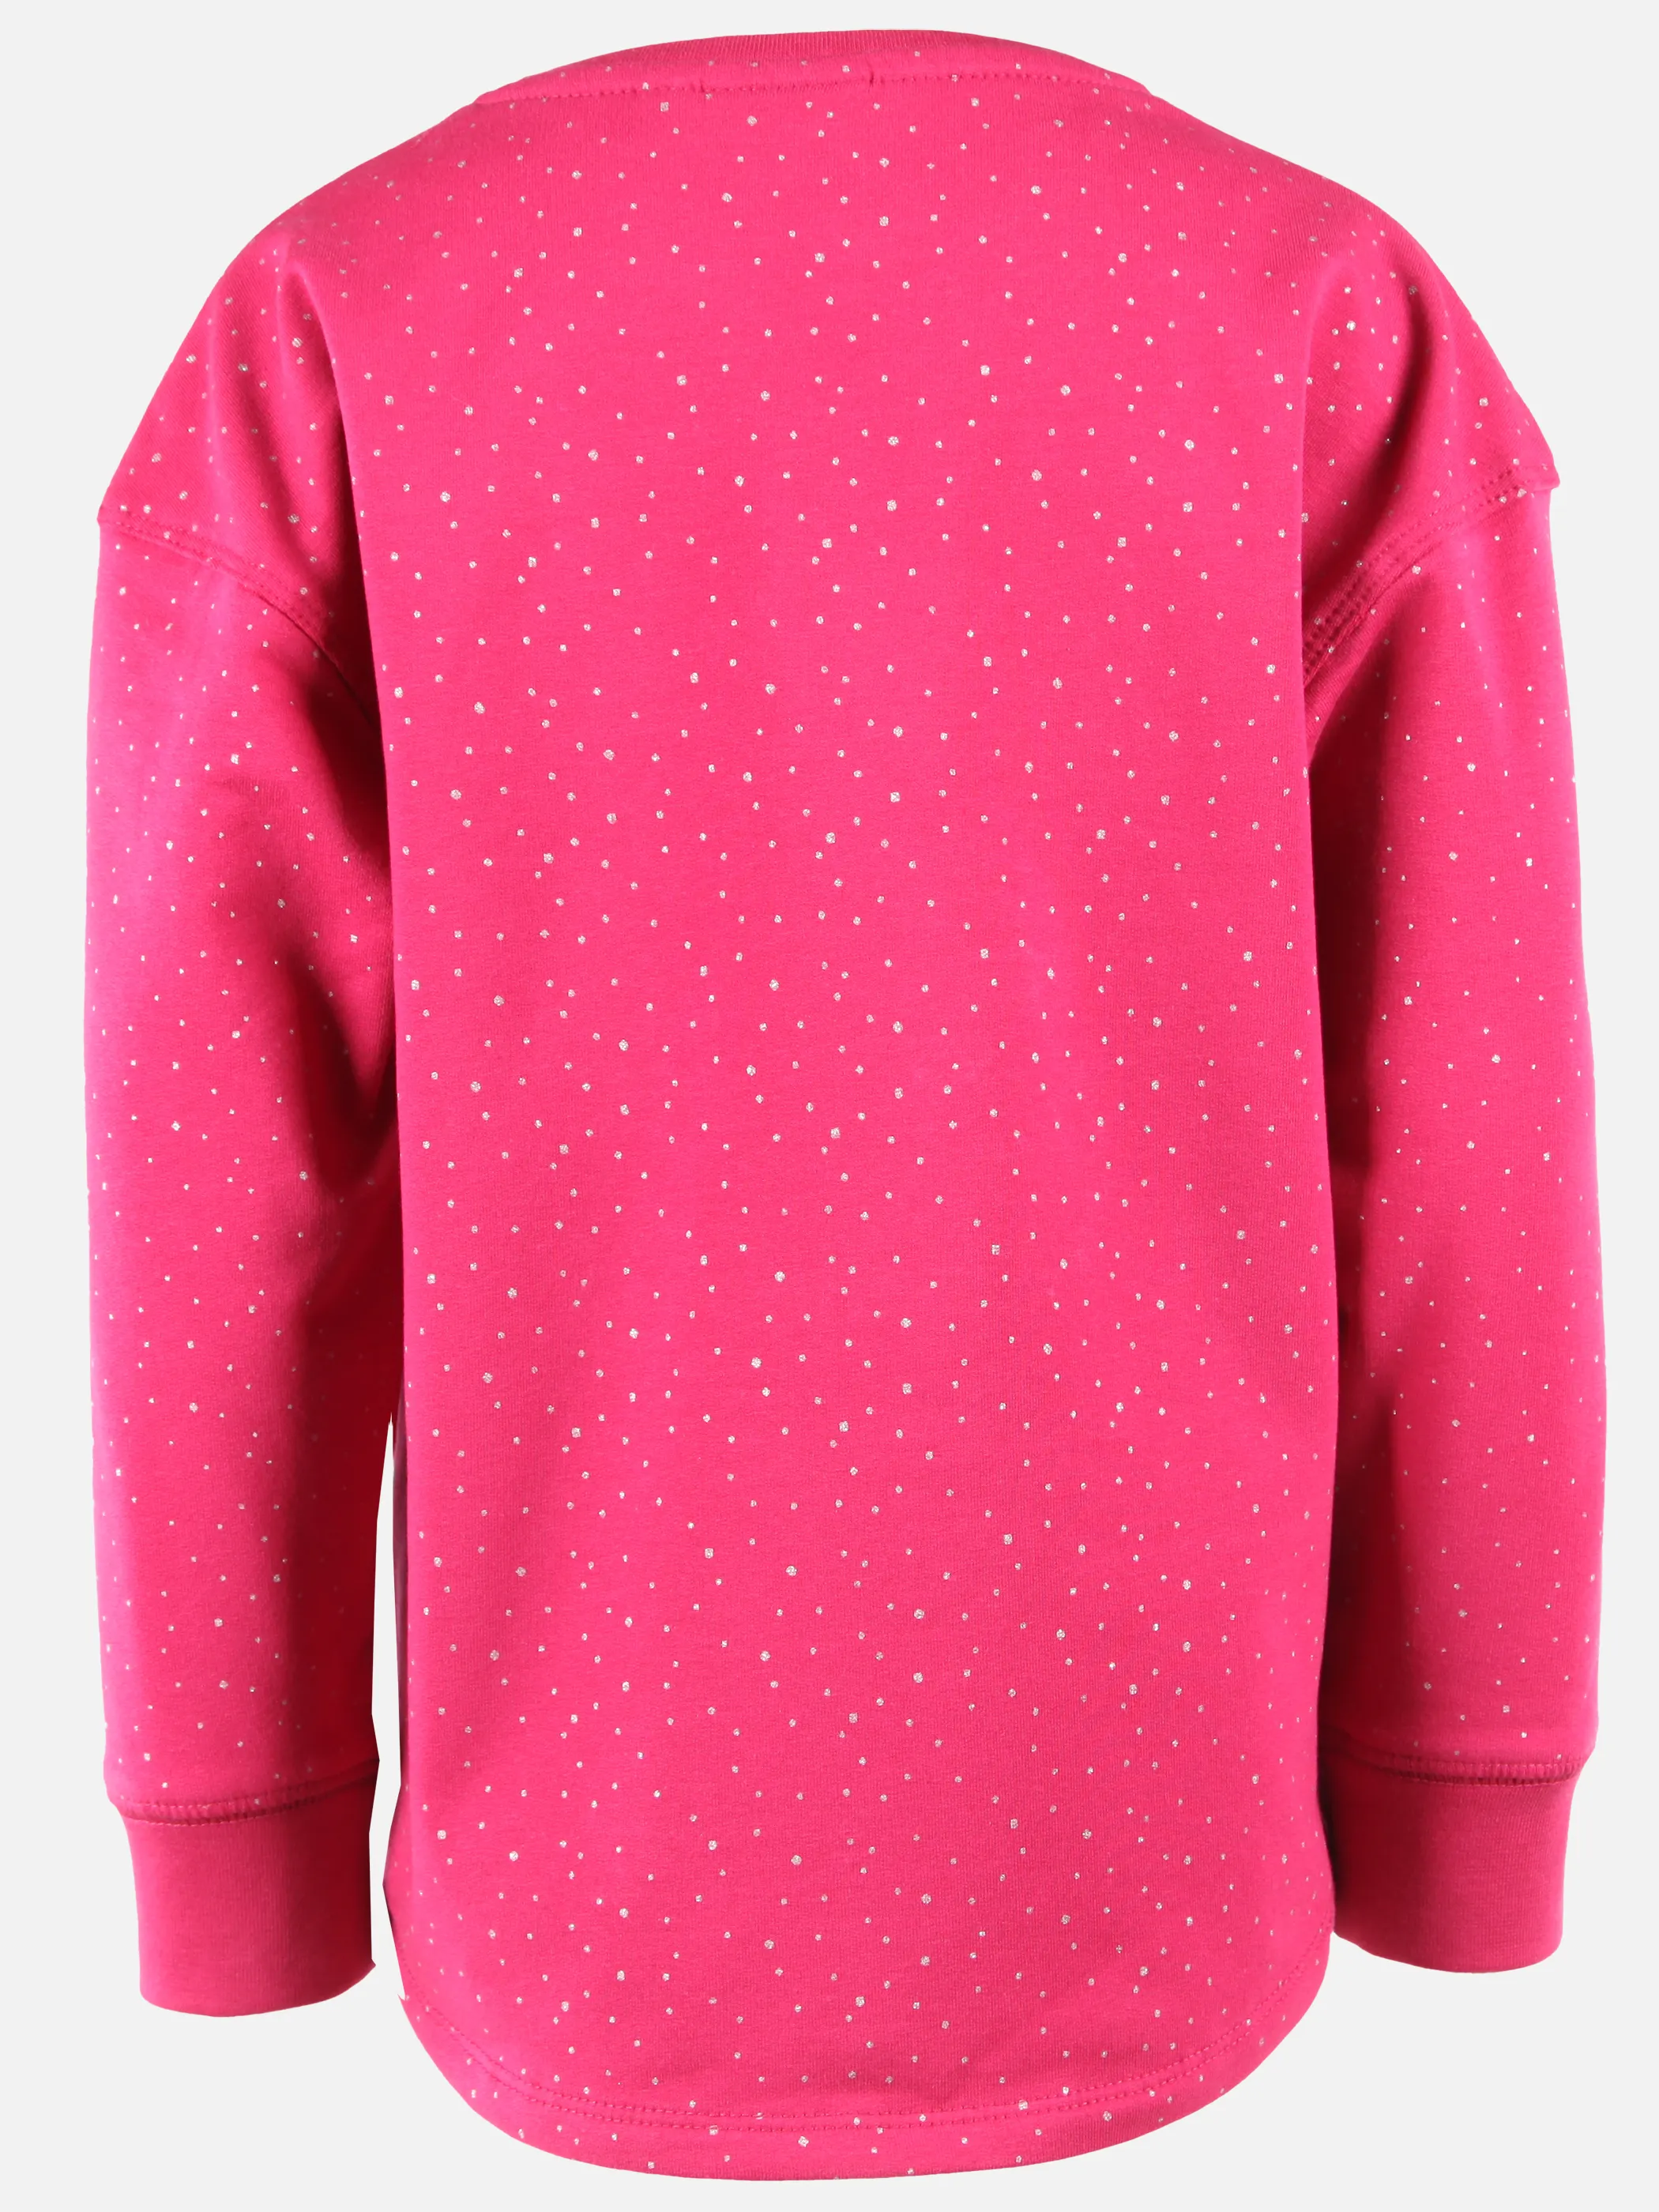 Stop + Go KM Sweatshirt mit Pferdeprint in pink Pink 899793 PINK 2